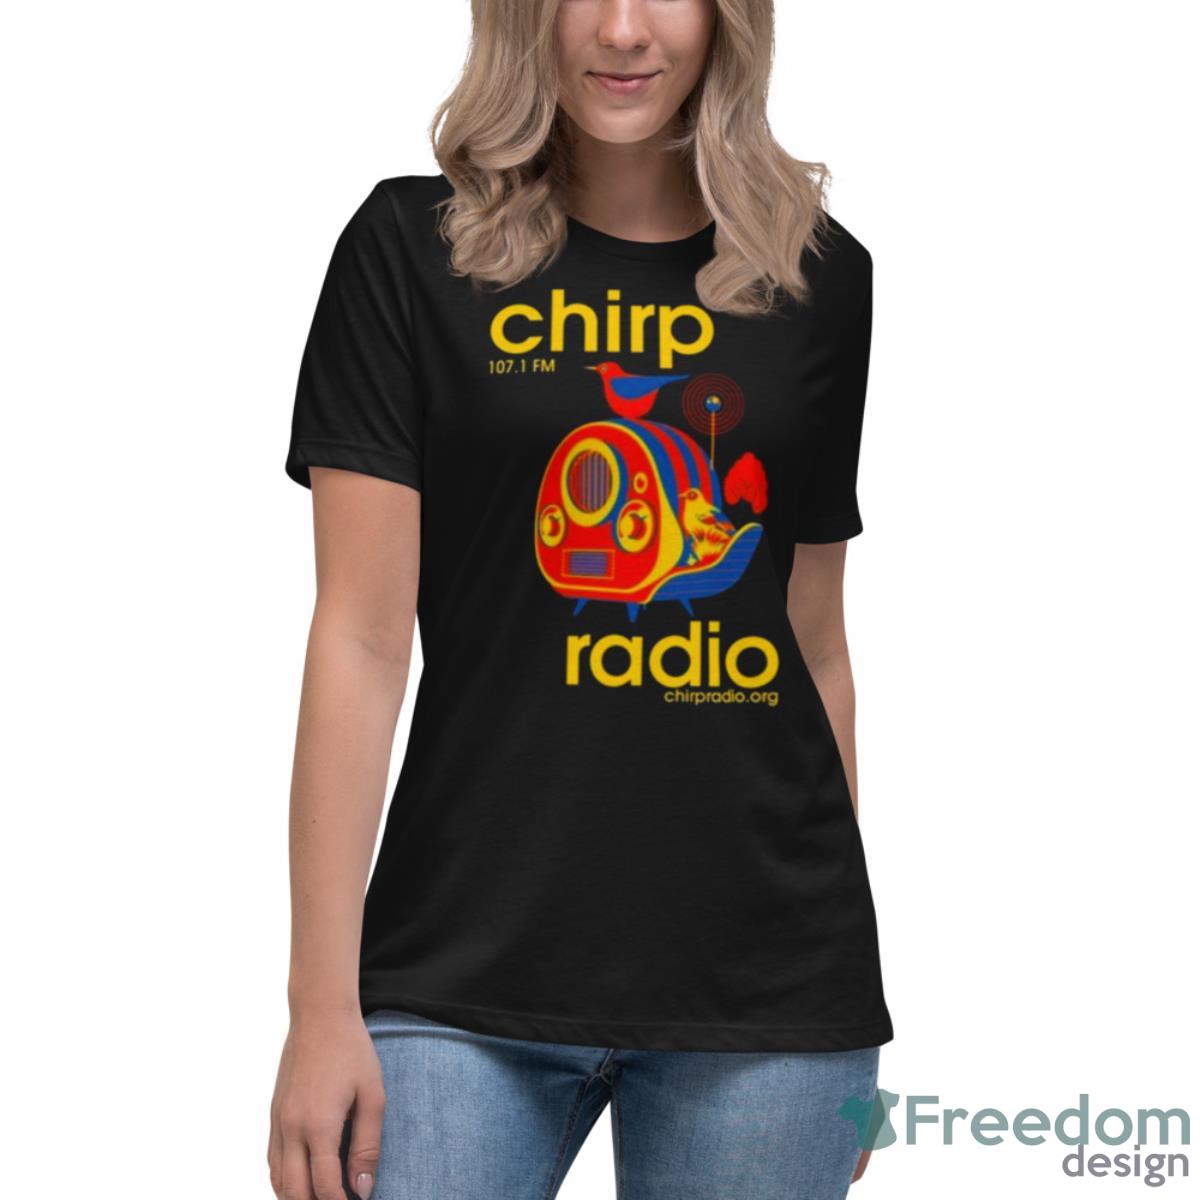 Chirp Radio 107.1 Fm Shirt